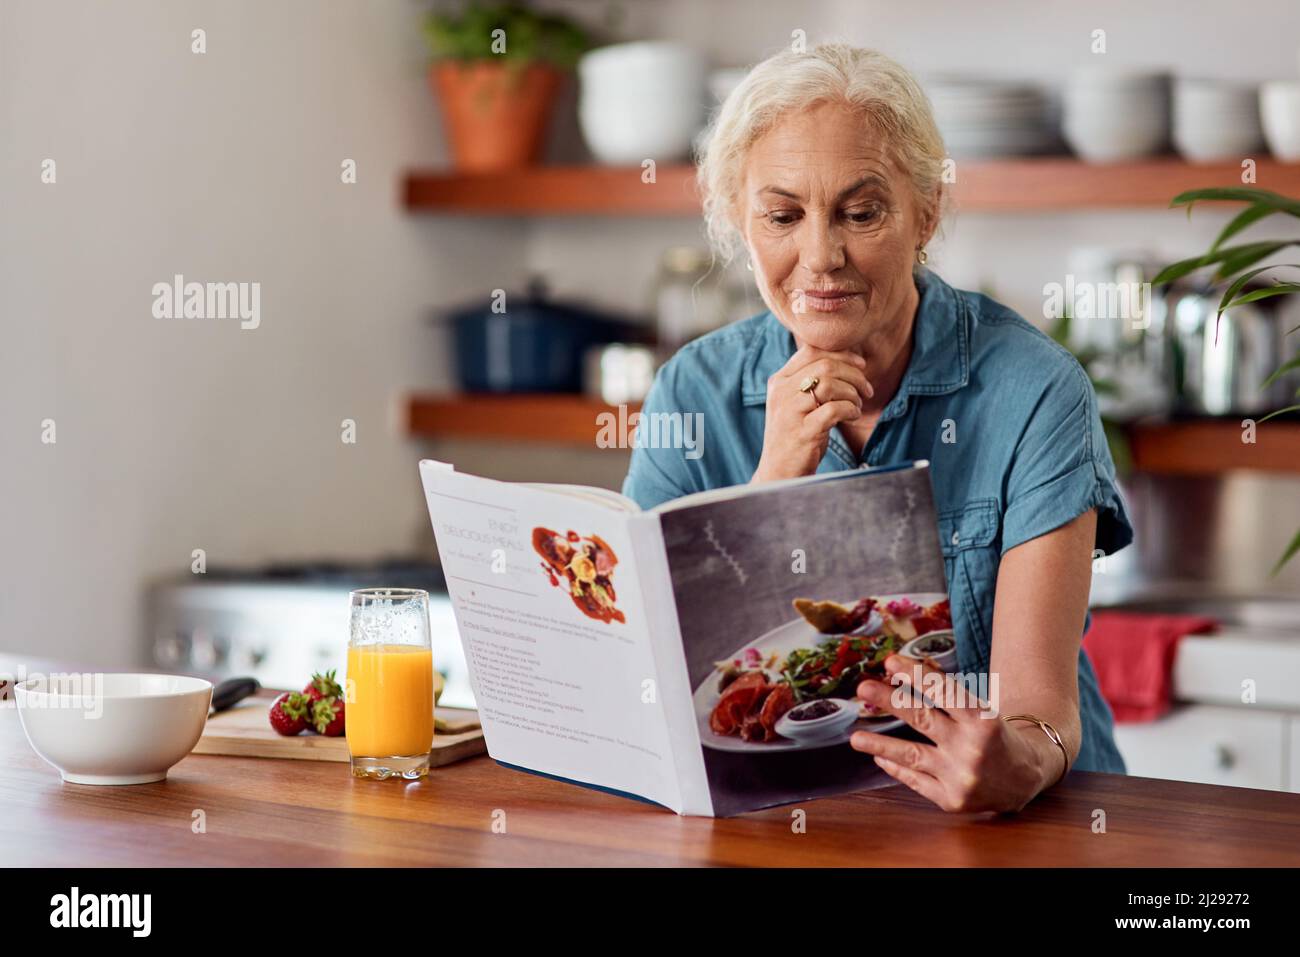 Der gesunde Weg ist der kluge Weg. Aufnahme einer reifen Frau, die ein Buch liest, während sie das Frühstück zu Hause vorbereitet. Stockfoto